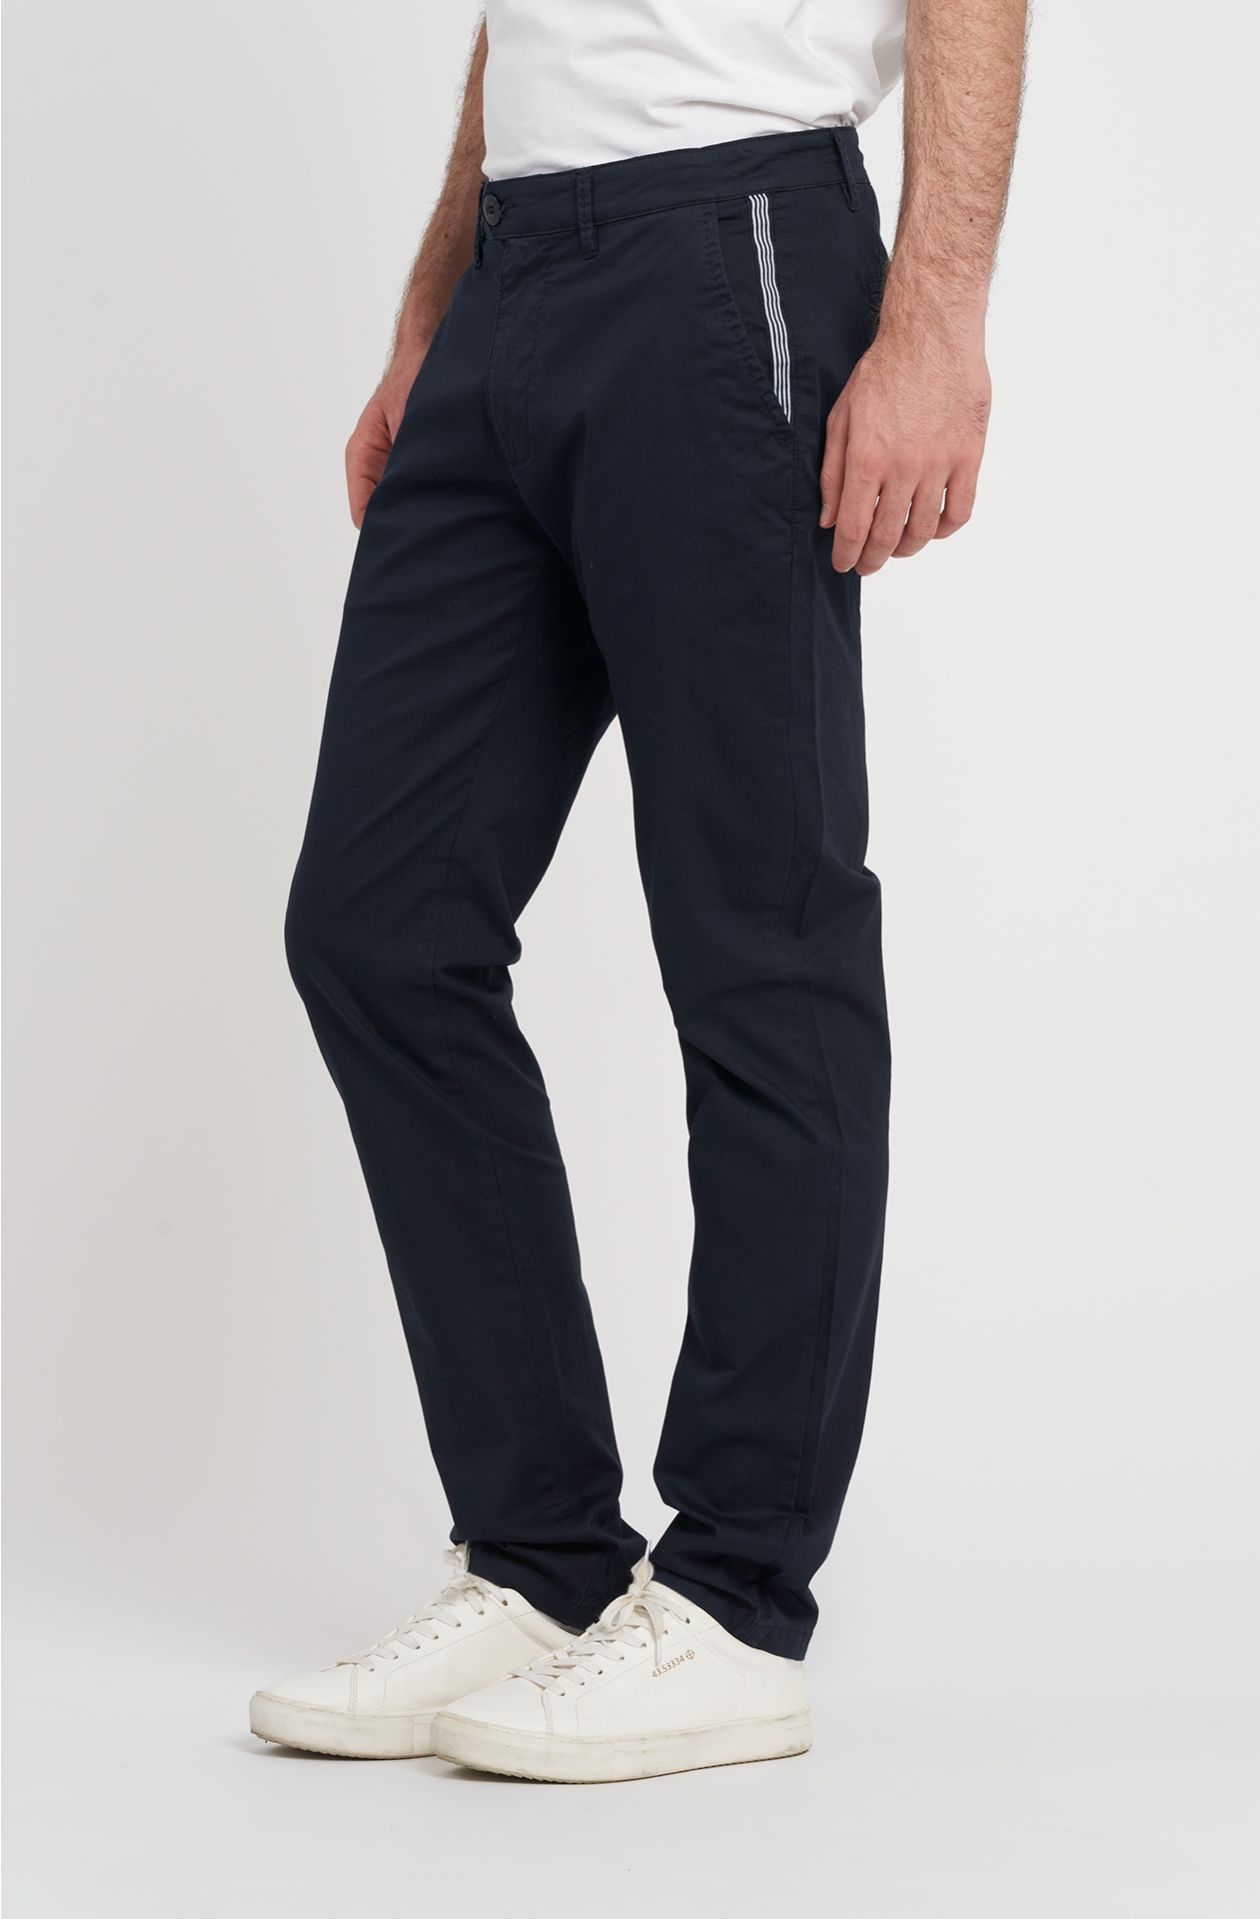 Amerigo Vespucci line trousers